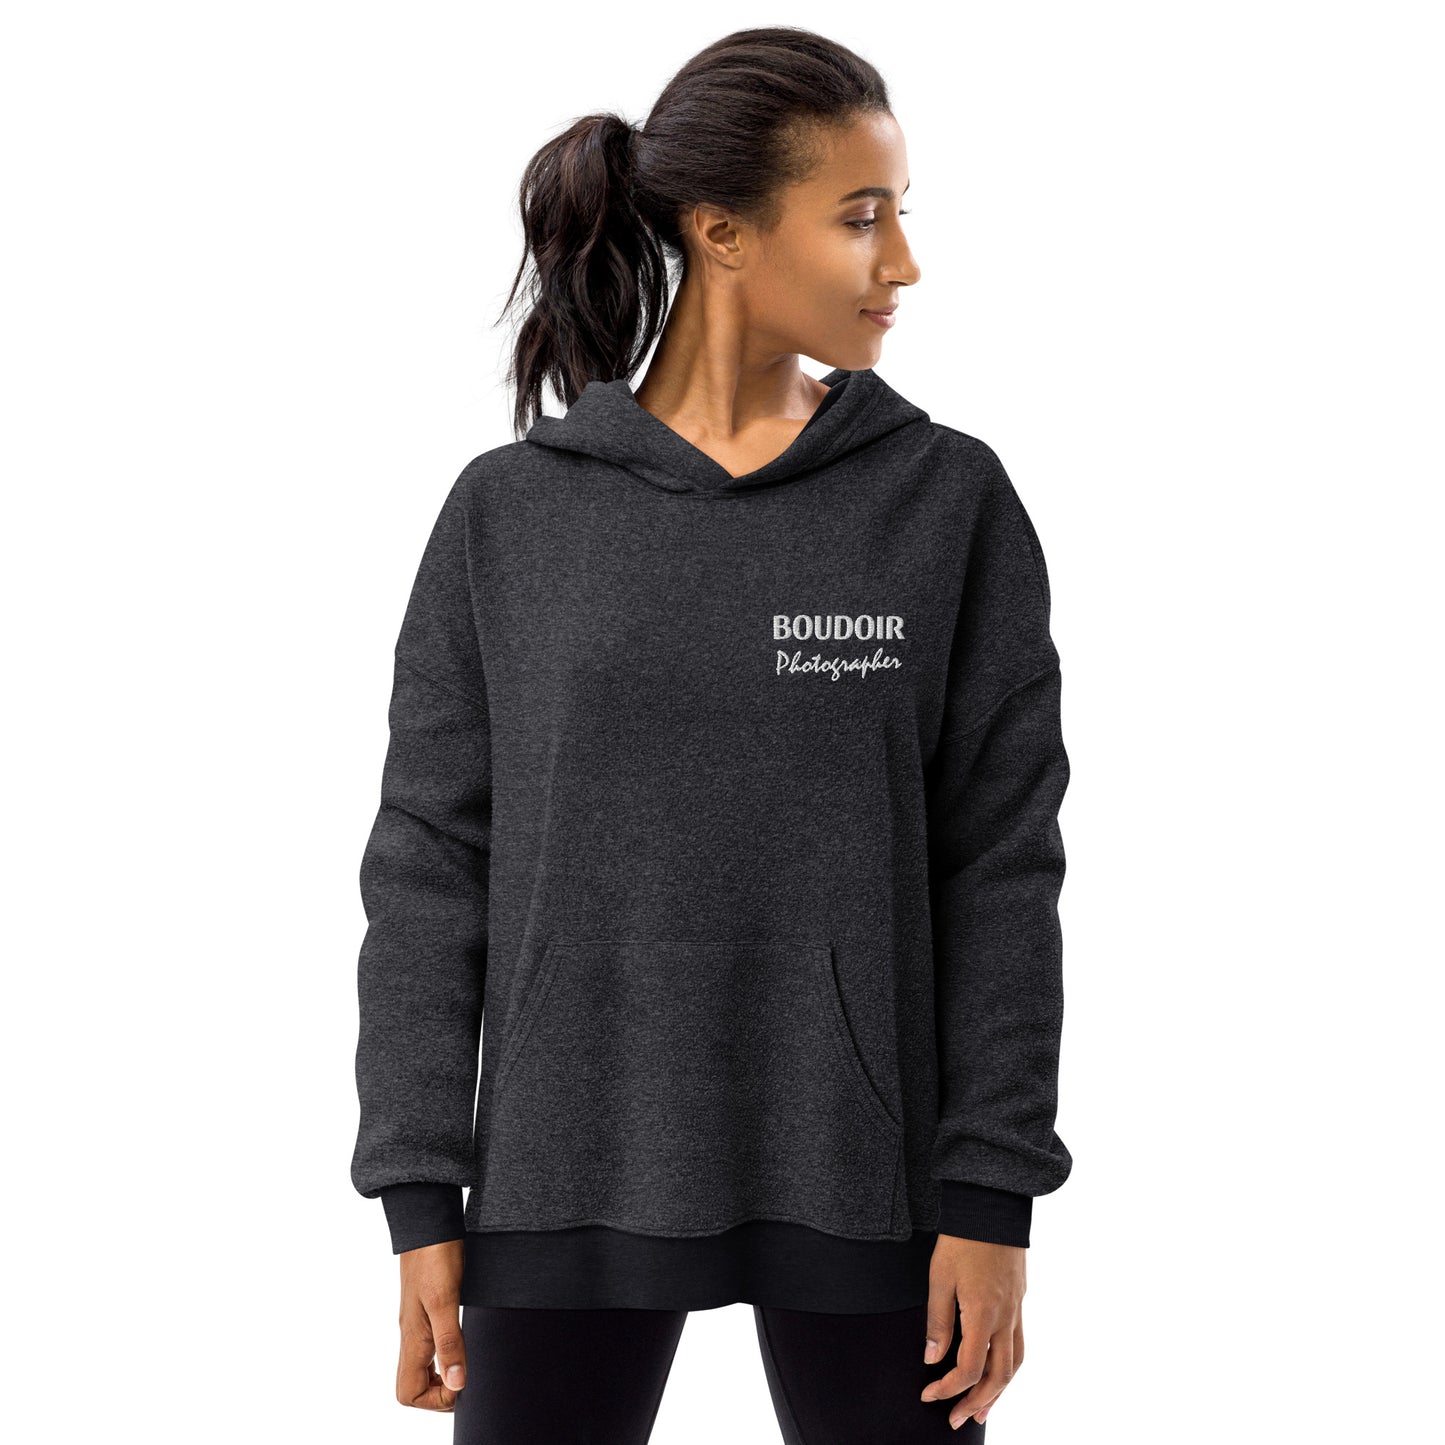 Unisex sueded fleece hoodie